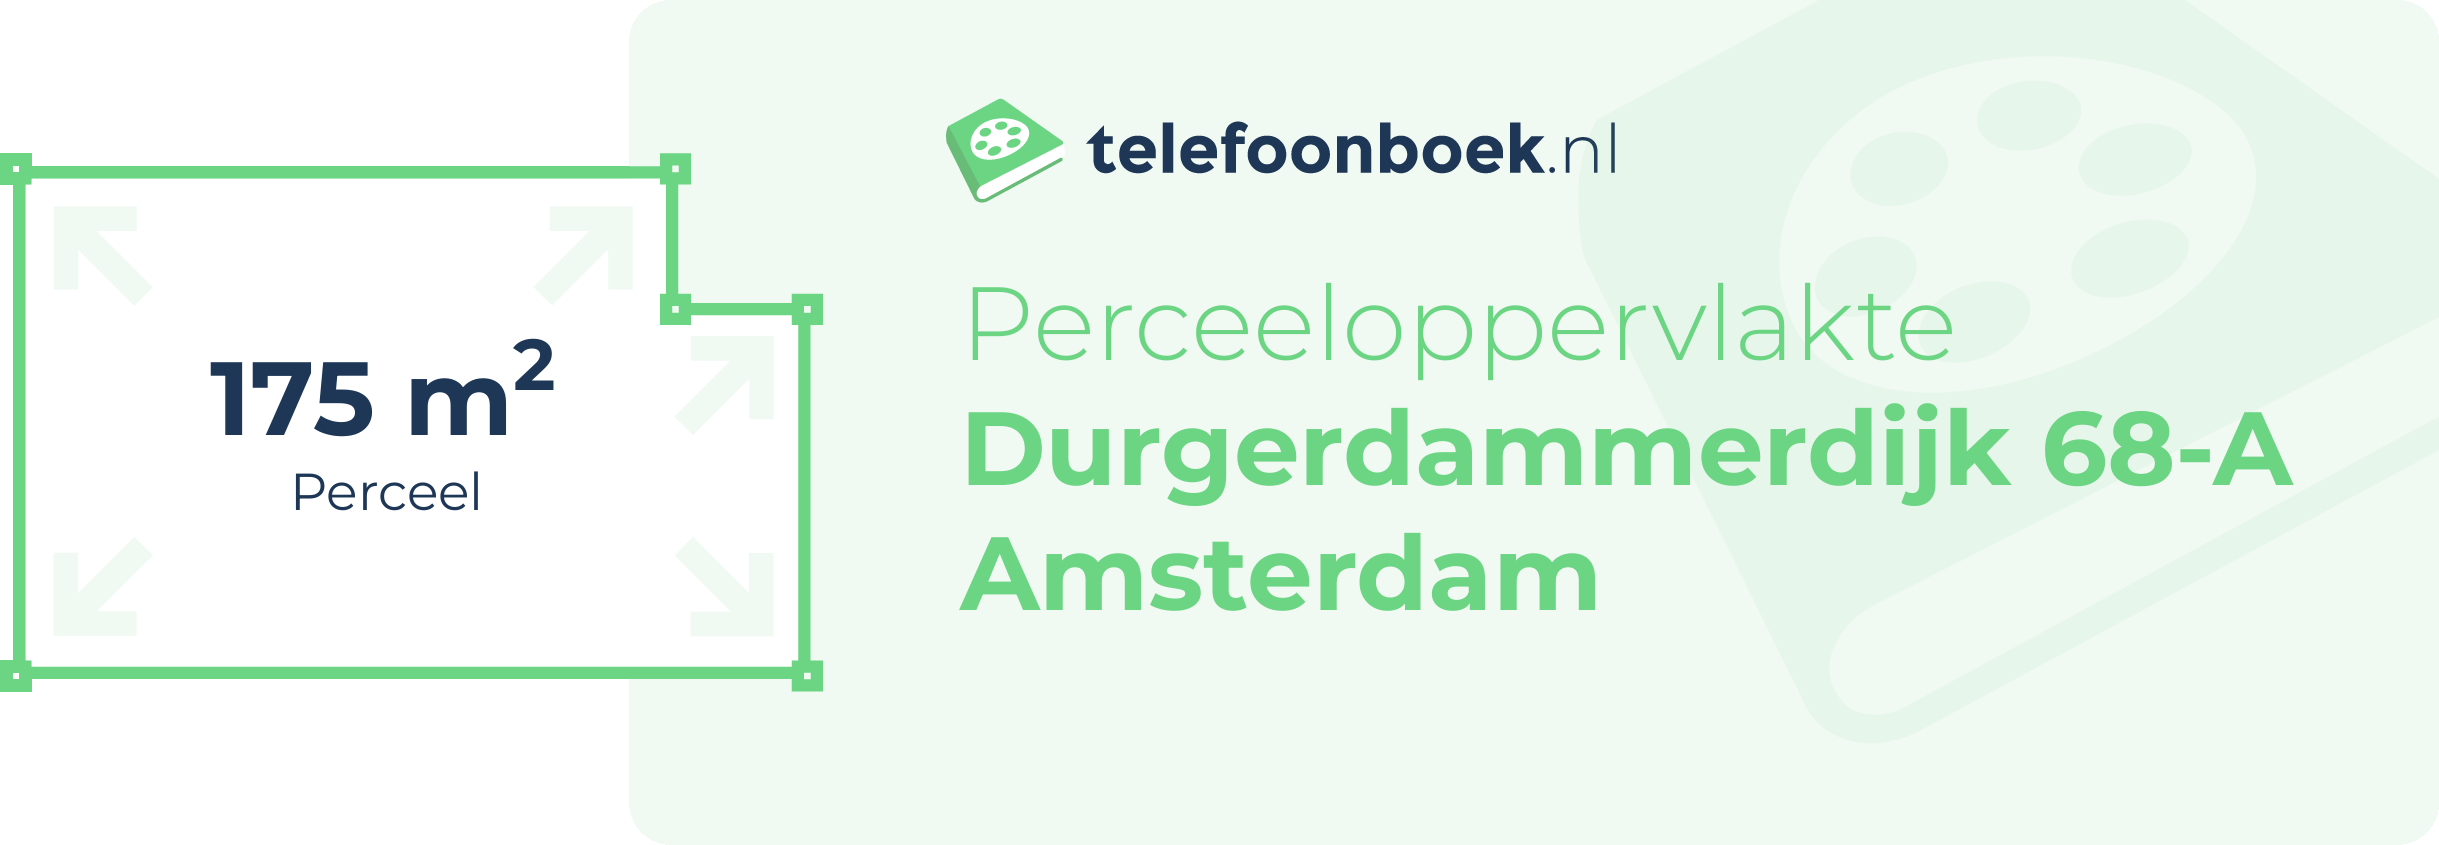 Perceeloppervlakte Durgerdammerdijk 68-A Amsterdam